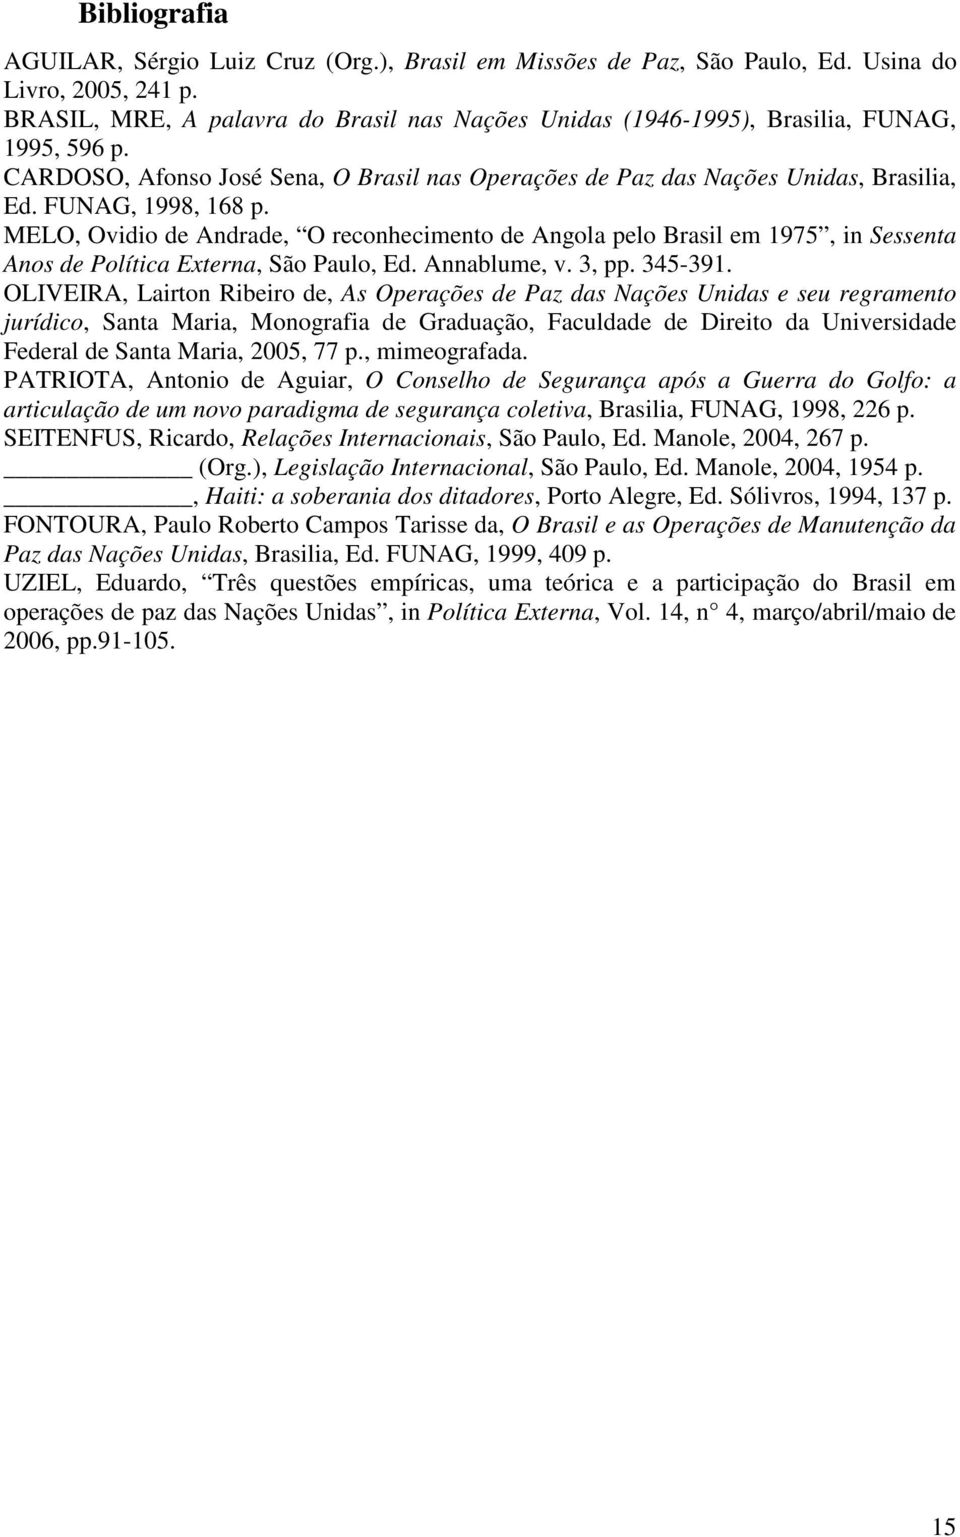 FUNAG, 1998, 168 p. MELO, Ovidio de Andrade, O reconhecimento de Angola pelo Brasil em 1975, in Sessenta Anos de Política Externa, São Paulo, Ed. Annablume, v. 3, pp. 345-391.